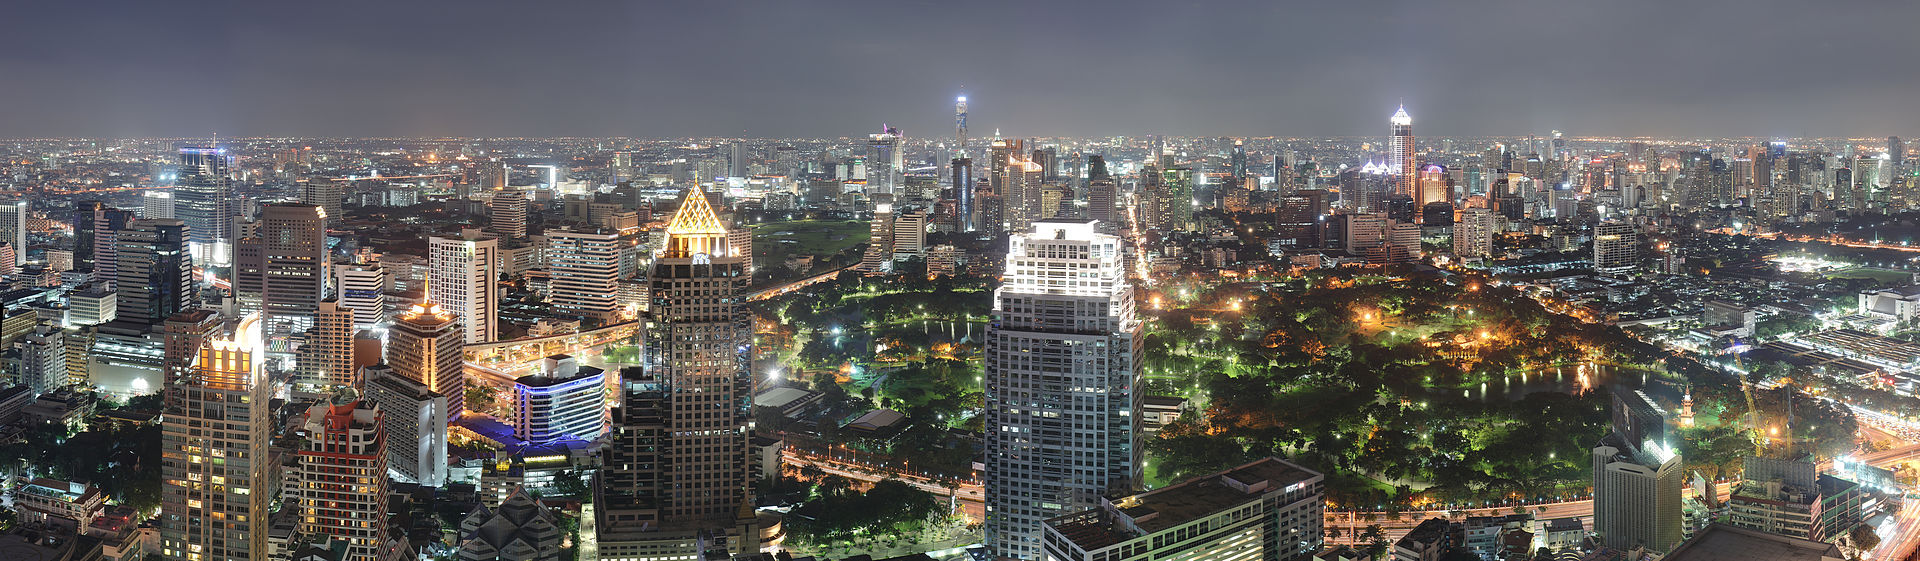 Thaïlande, la prudence est de mise à Bangkok pour les voyages d’affaires